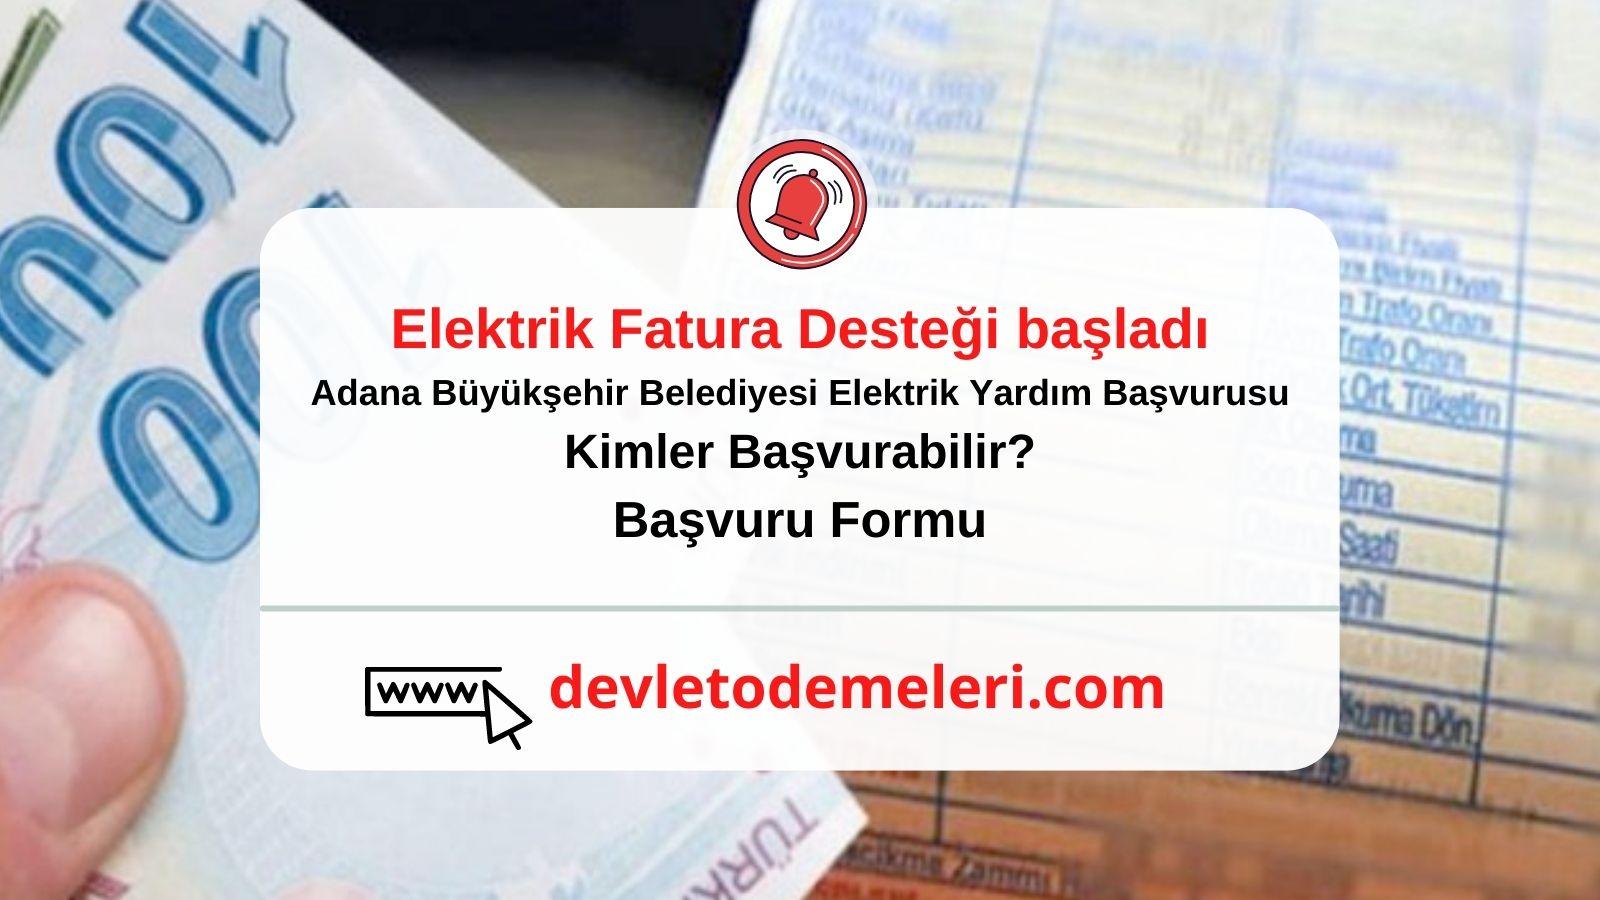 Adana Büyükşehir Belediyesi Elektrik Yardım Başvurusu